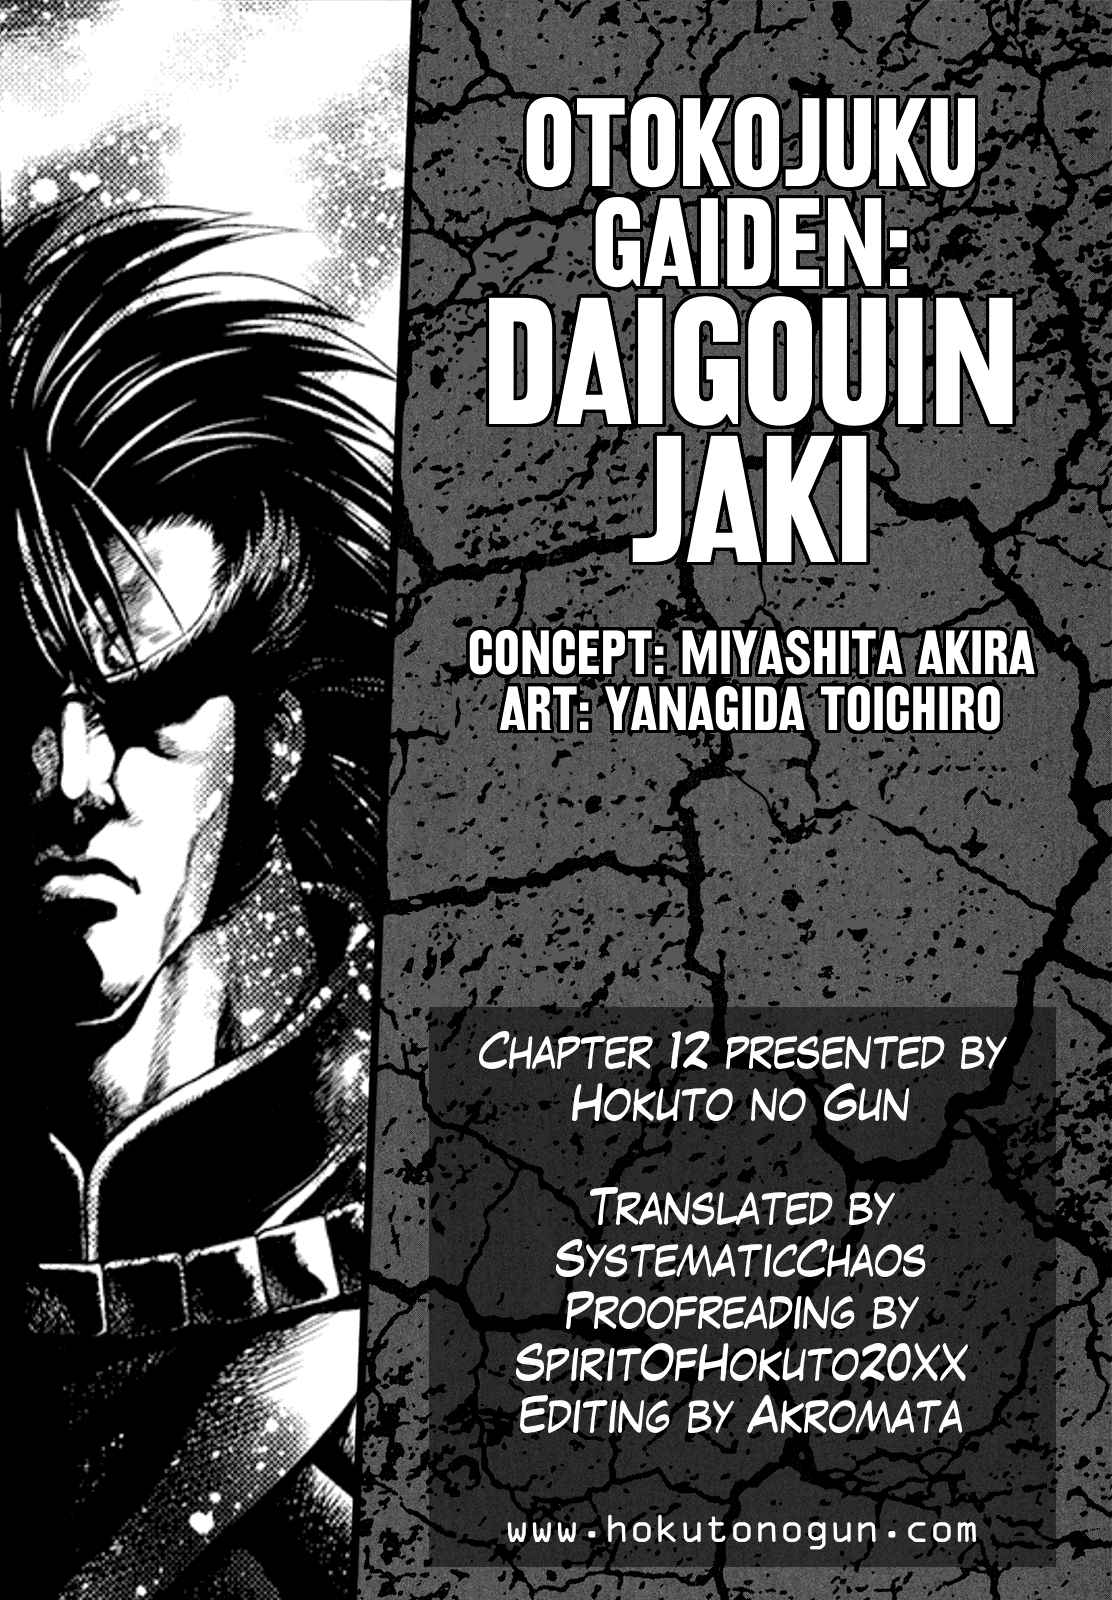 Otokojuku Gaiden Daigouin Jaki Vol. 2 Ch. 12 Jaki vs. Kenzaki